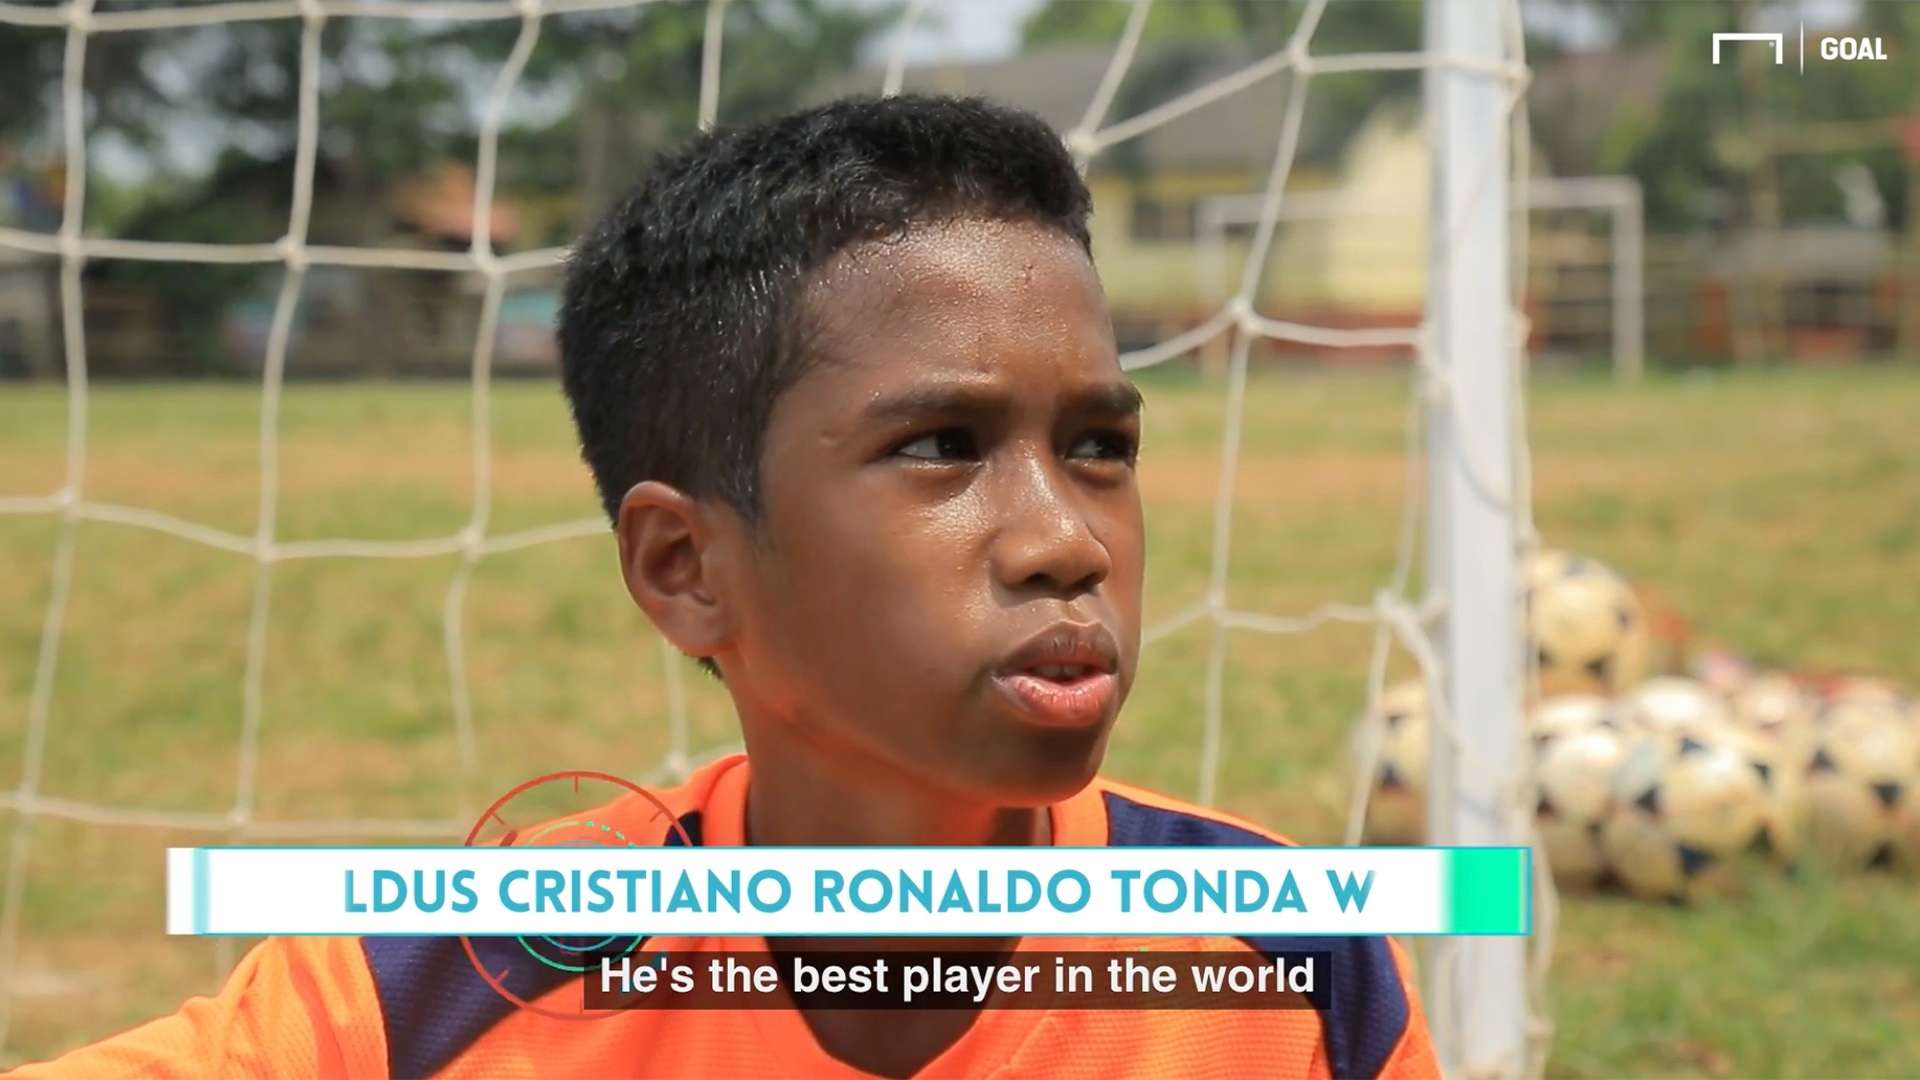 Cristiano Ronaldo Tonda